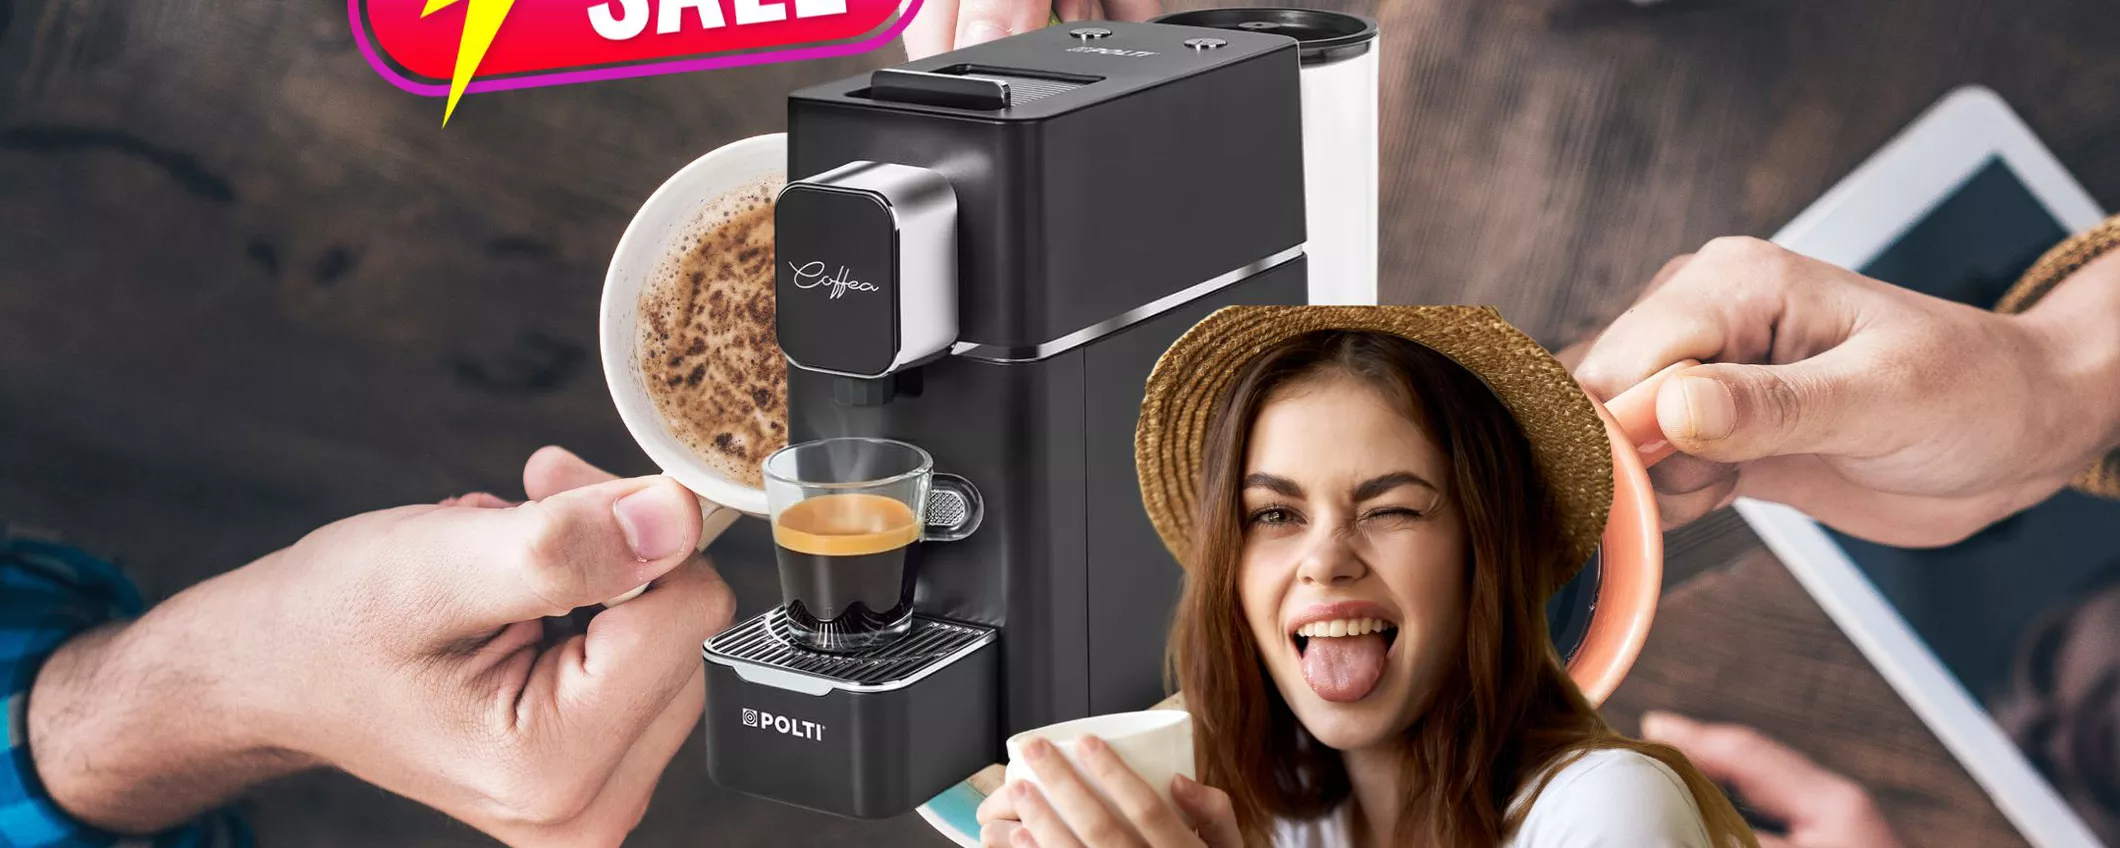 Altro che capsule: con questa macchinetta del caffè risparmiate!